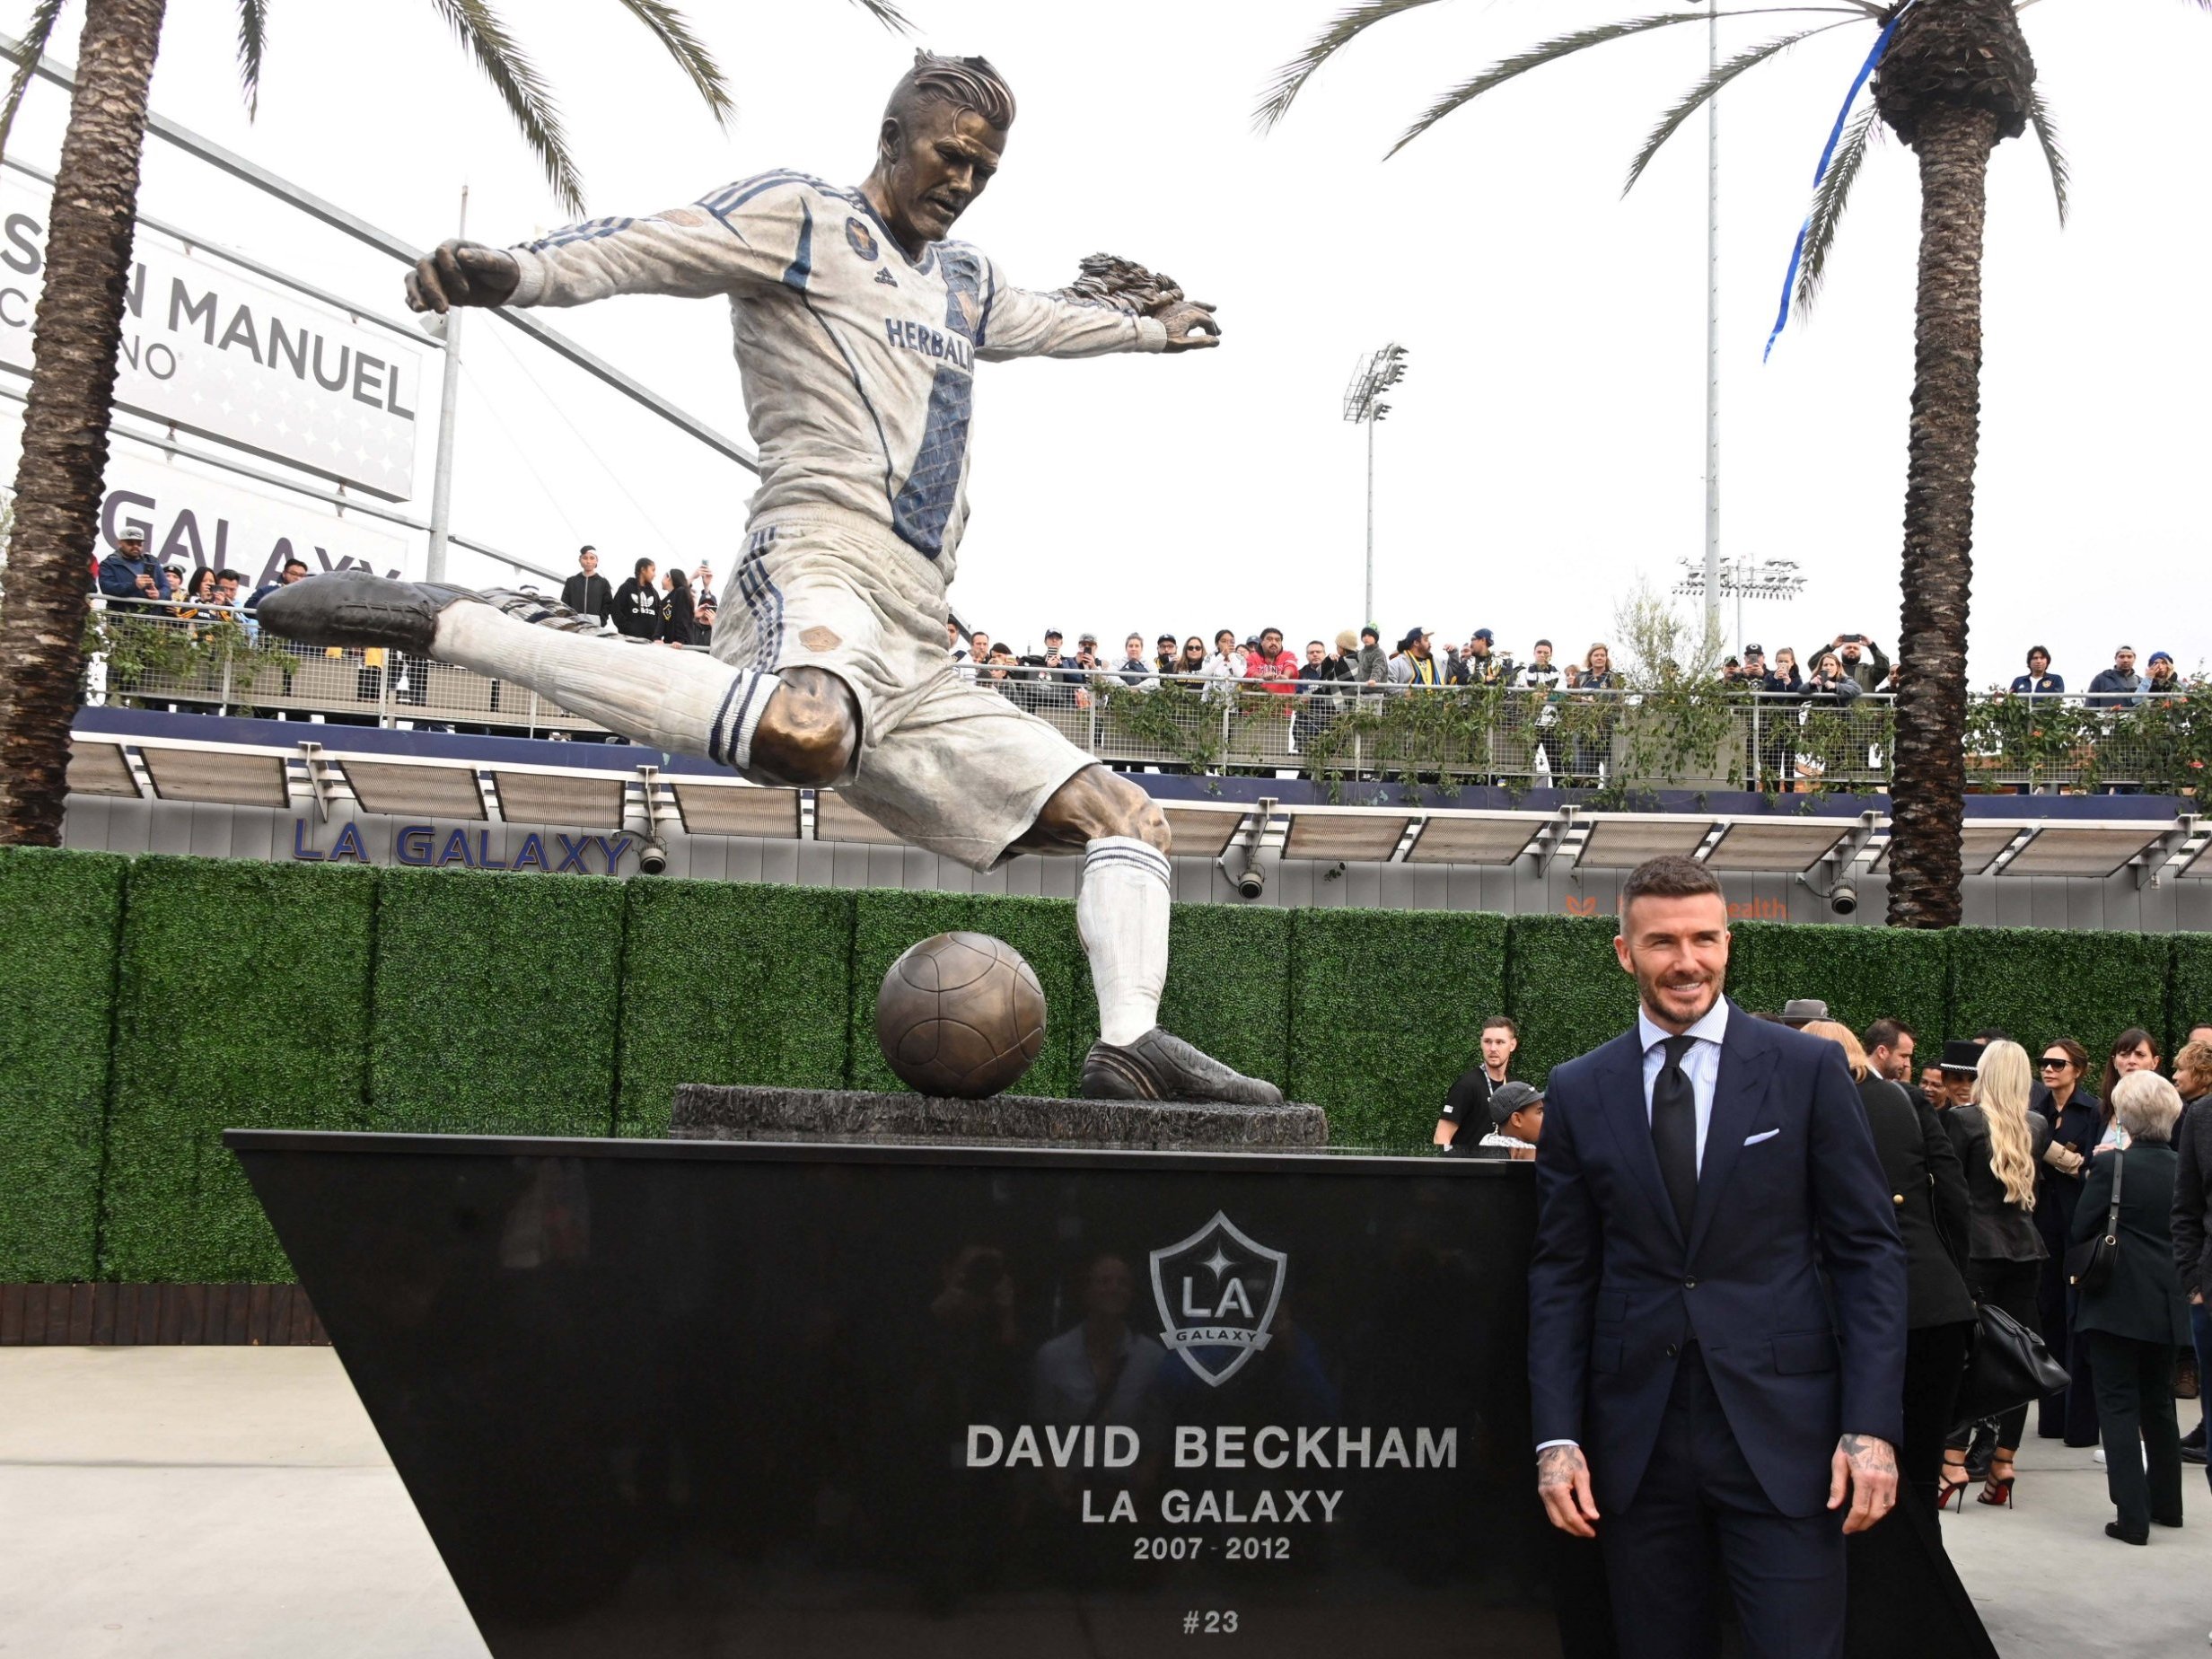 David Beckham a sa statue devant le stade du LA Galaxy